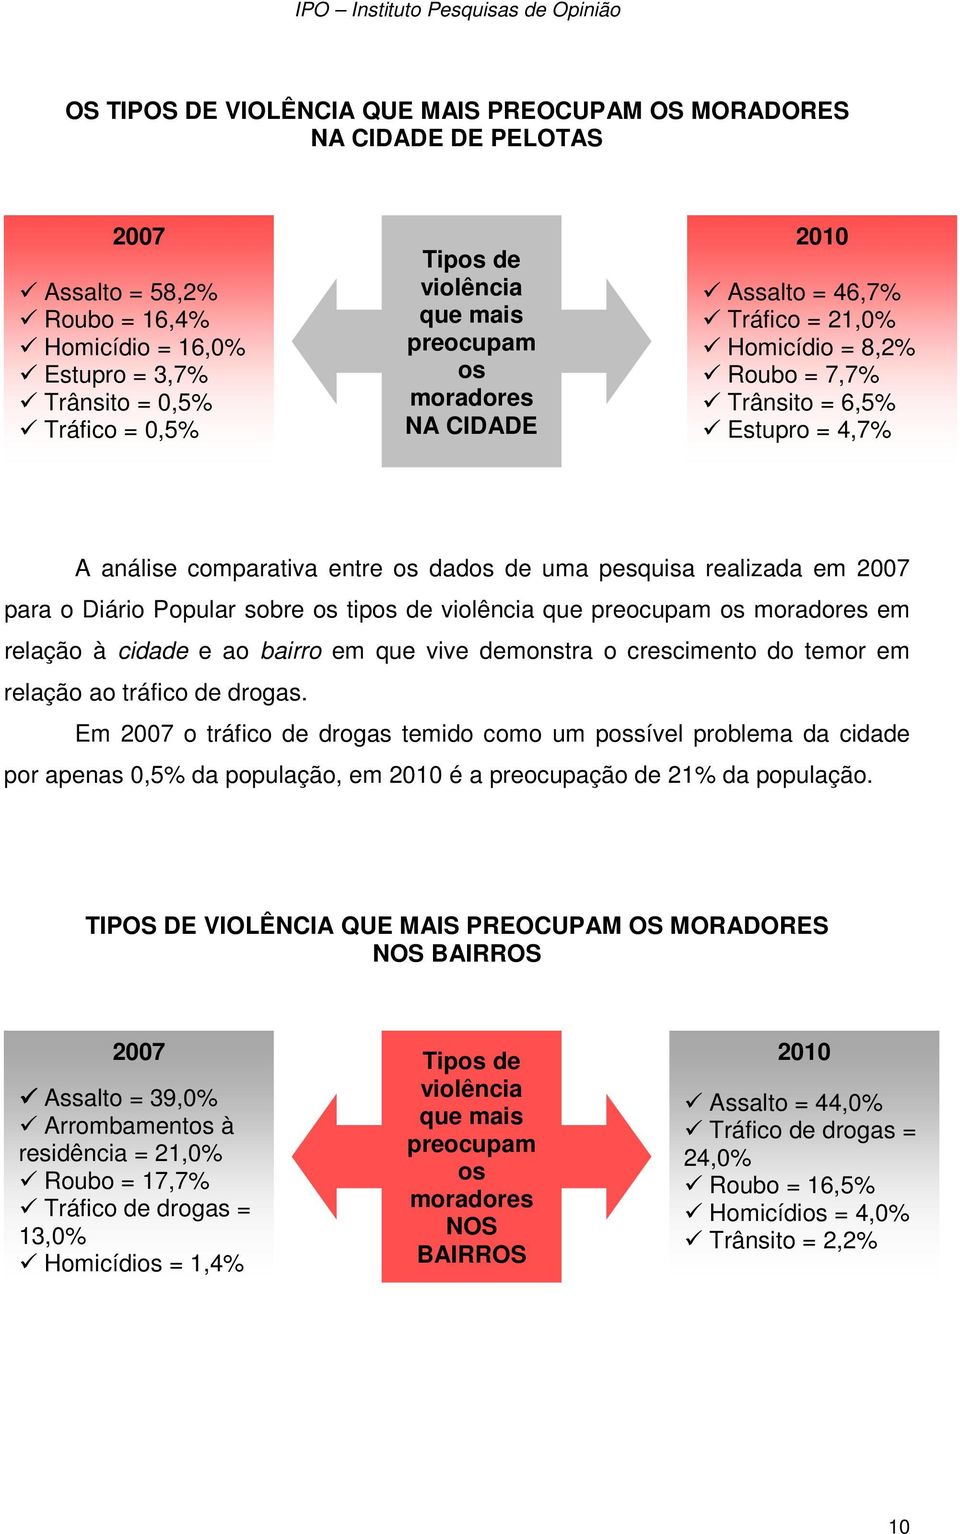 em 2007 para o Diário Popular sobre os tipos de violência que preocupam os moradores em relação à cidade e ao bairro em que vive demonstra o crescimento do temor em relação ao tráfico de drogas.